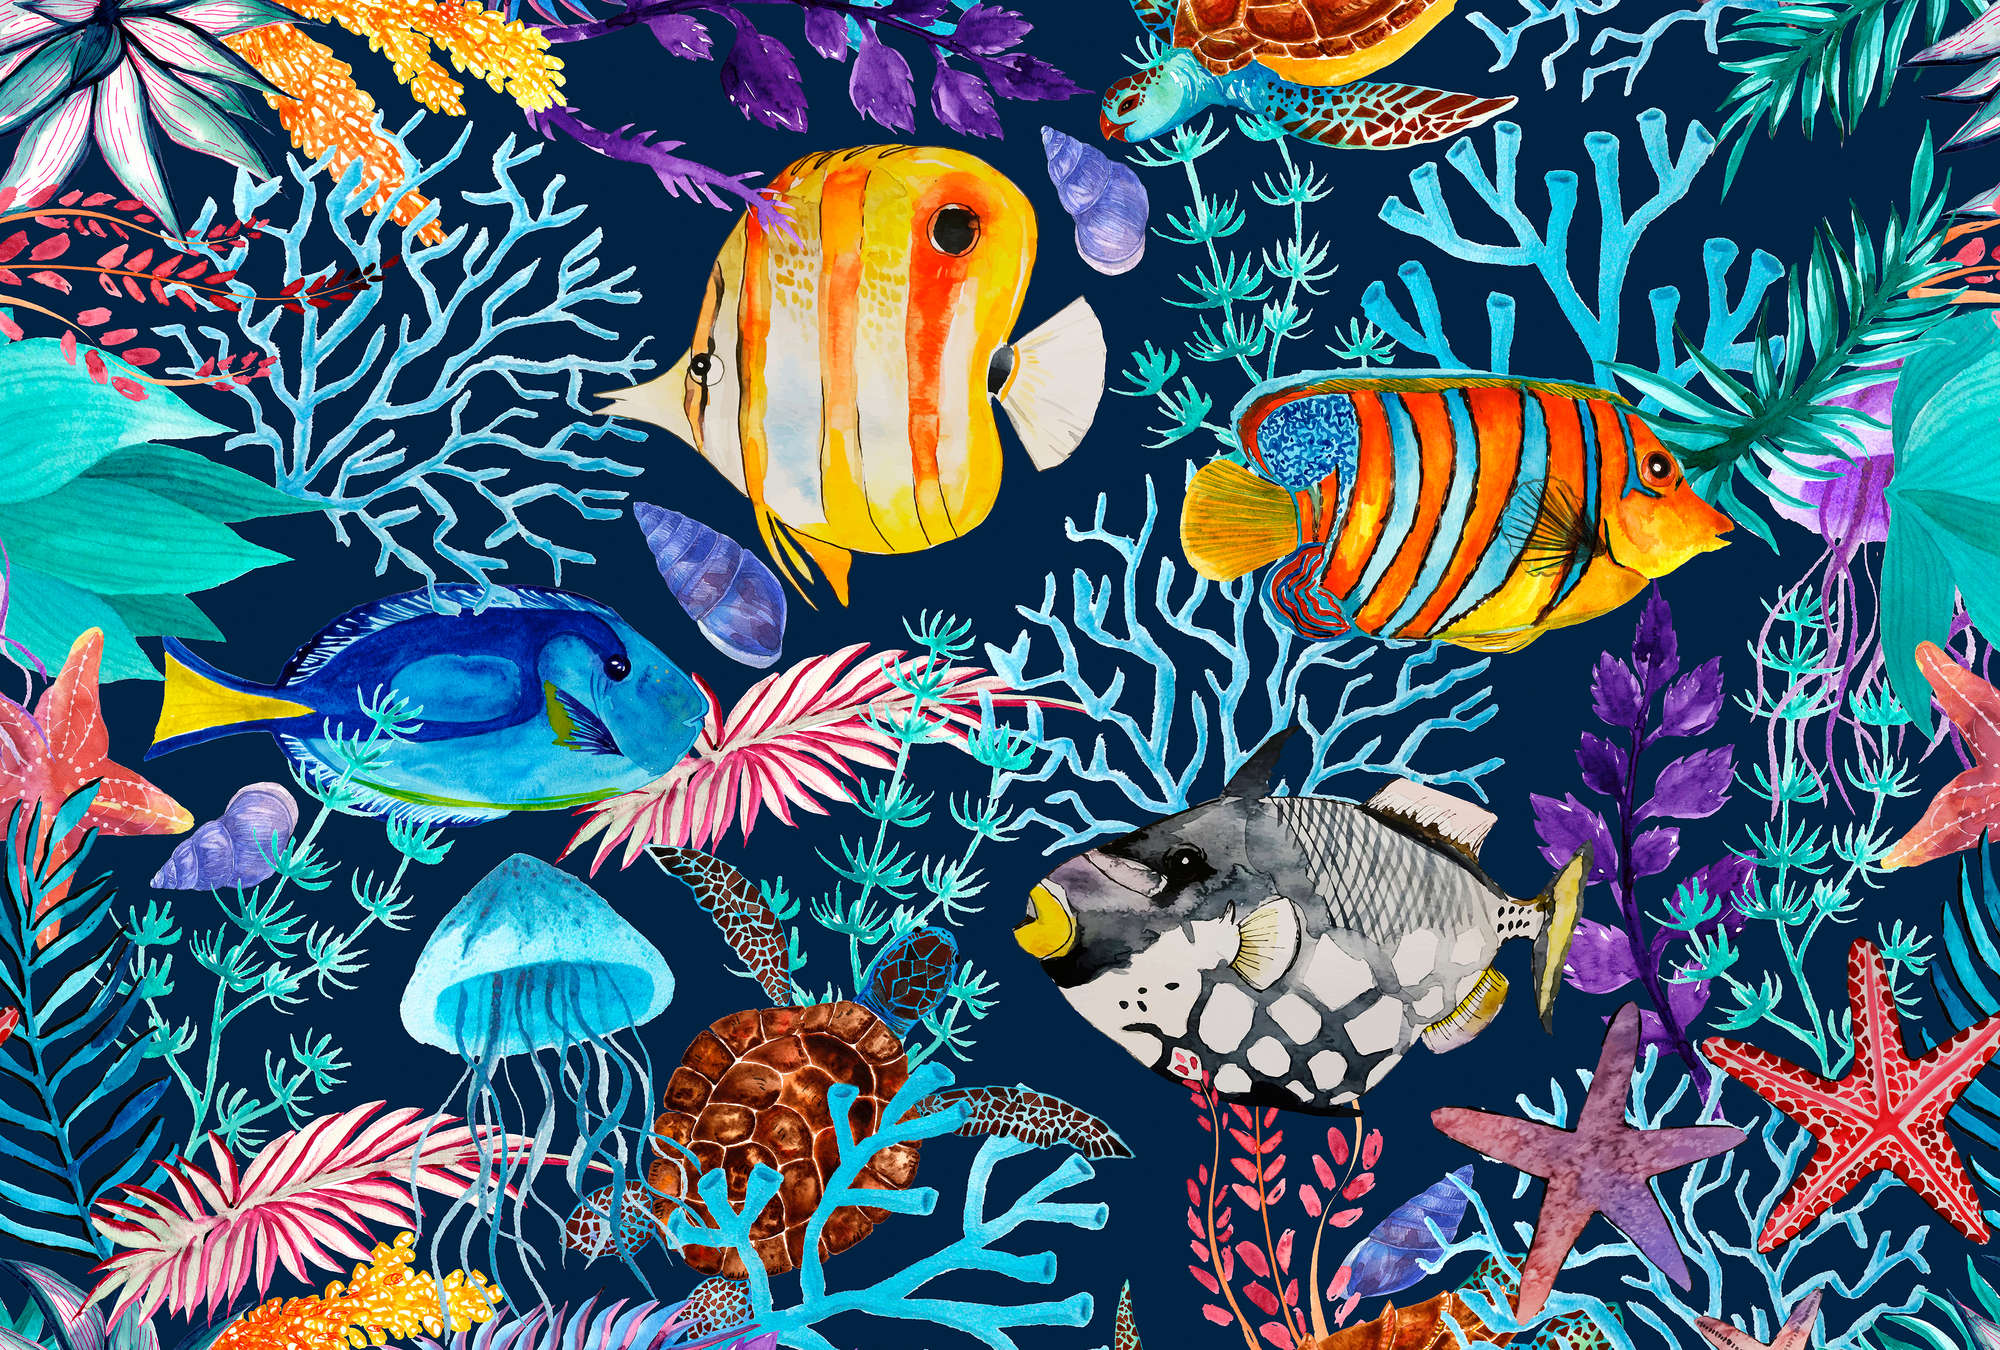             Papel pintado subacuático con peces y estrellas de mar de colores
        